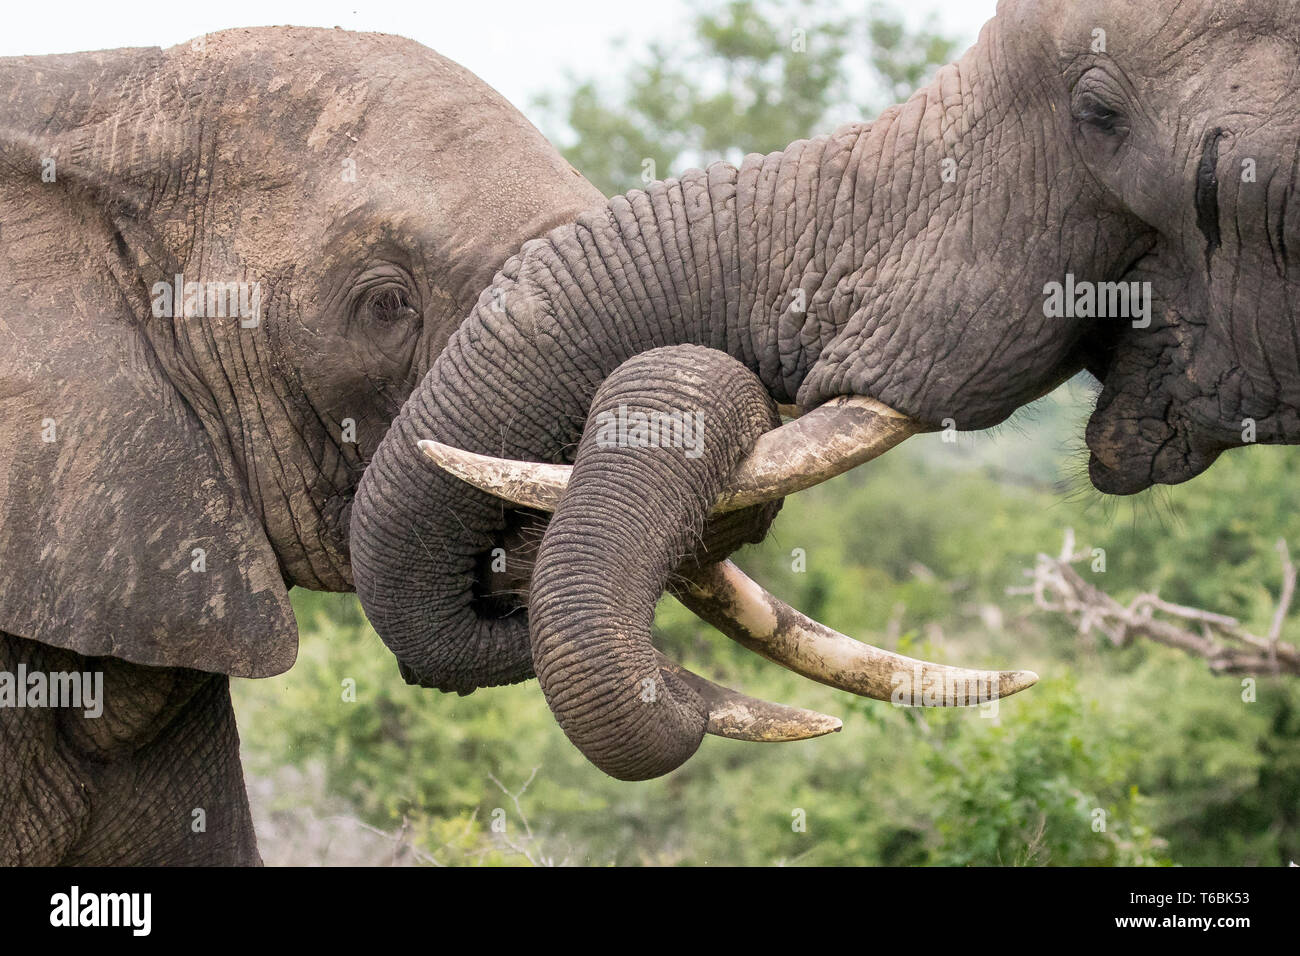 Zwei Elefant, Loxodonta africana, ihre Stämme zusammen wickeln und um ihre stoßzähne, wie sie kämpfen spielen Stockfoto